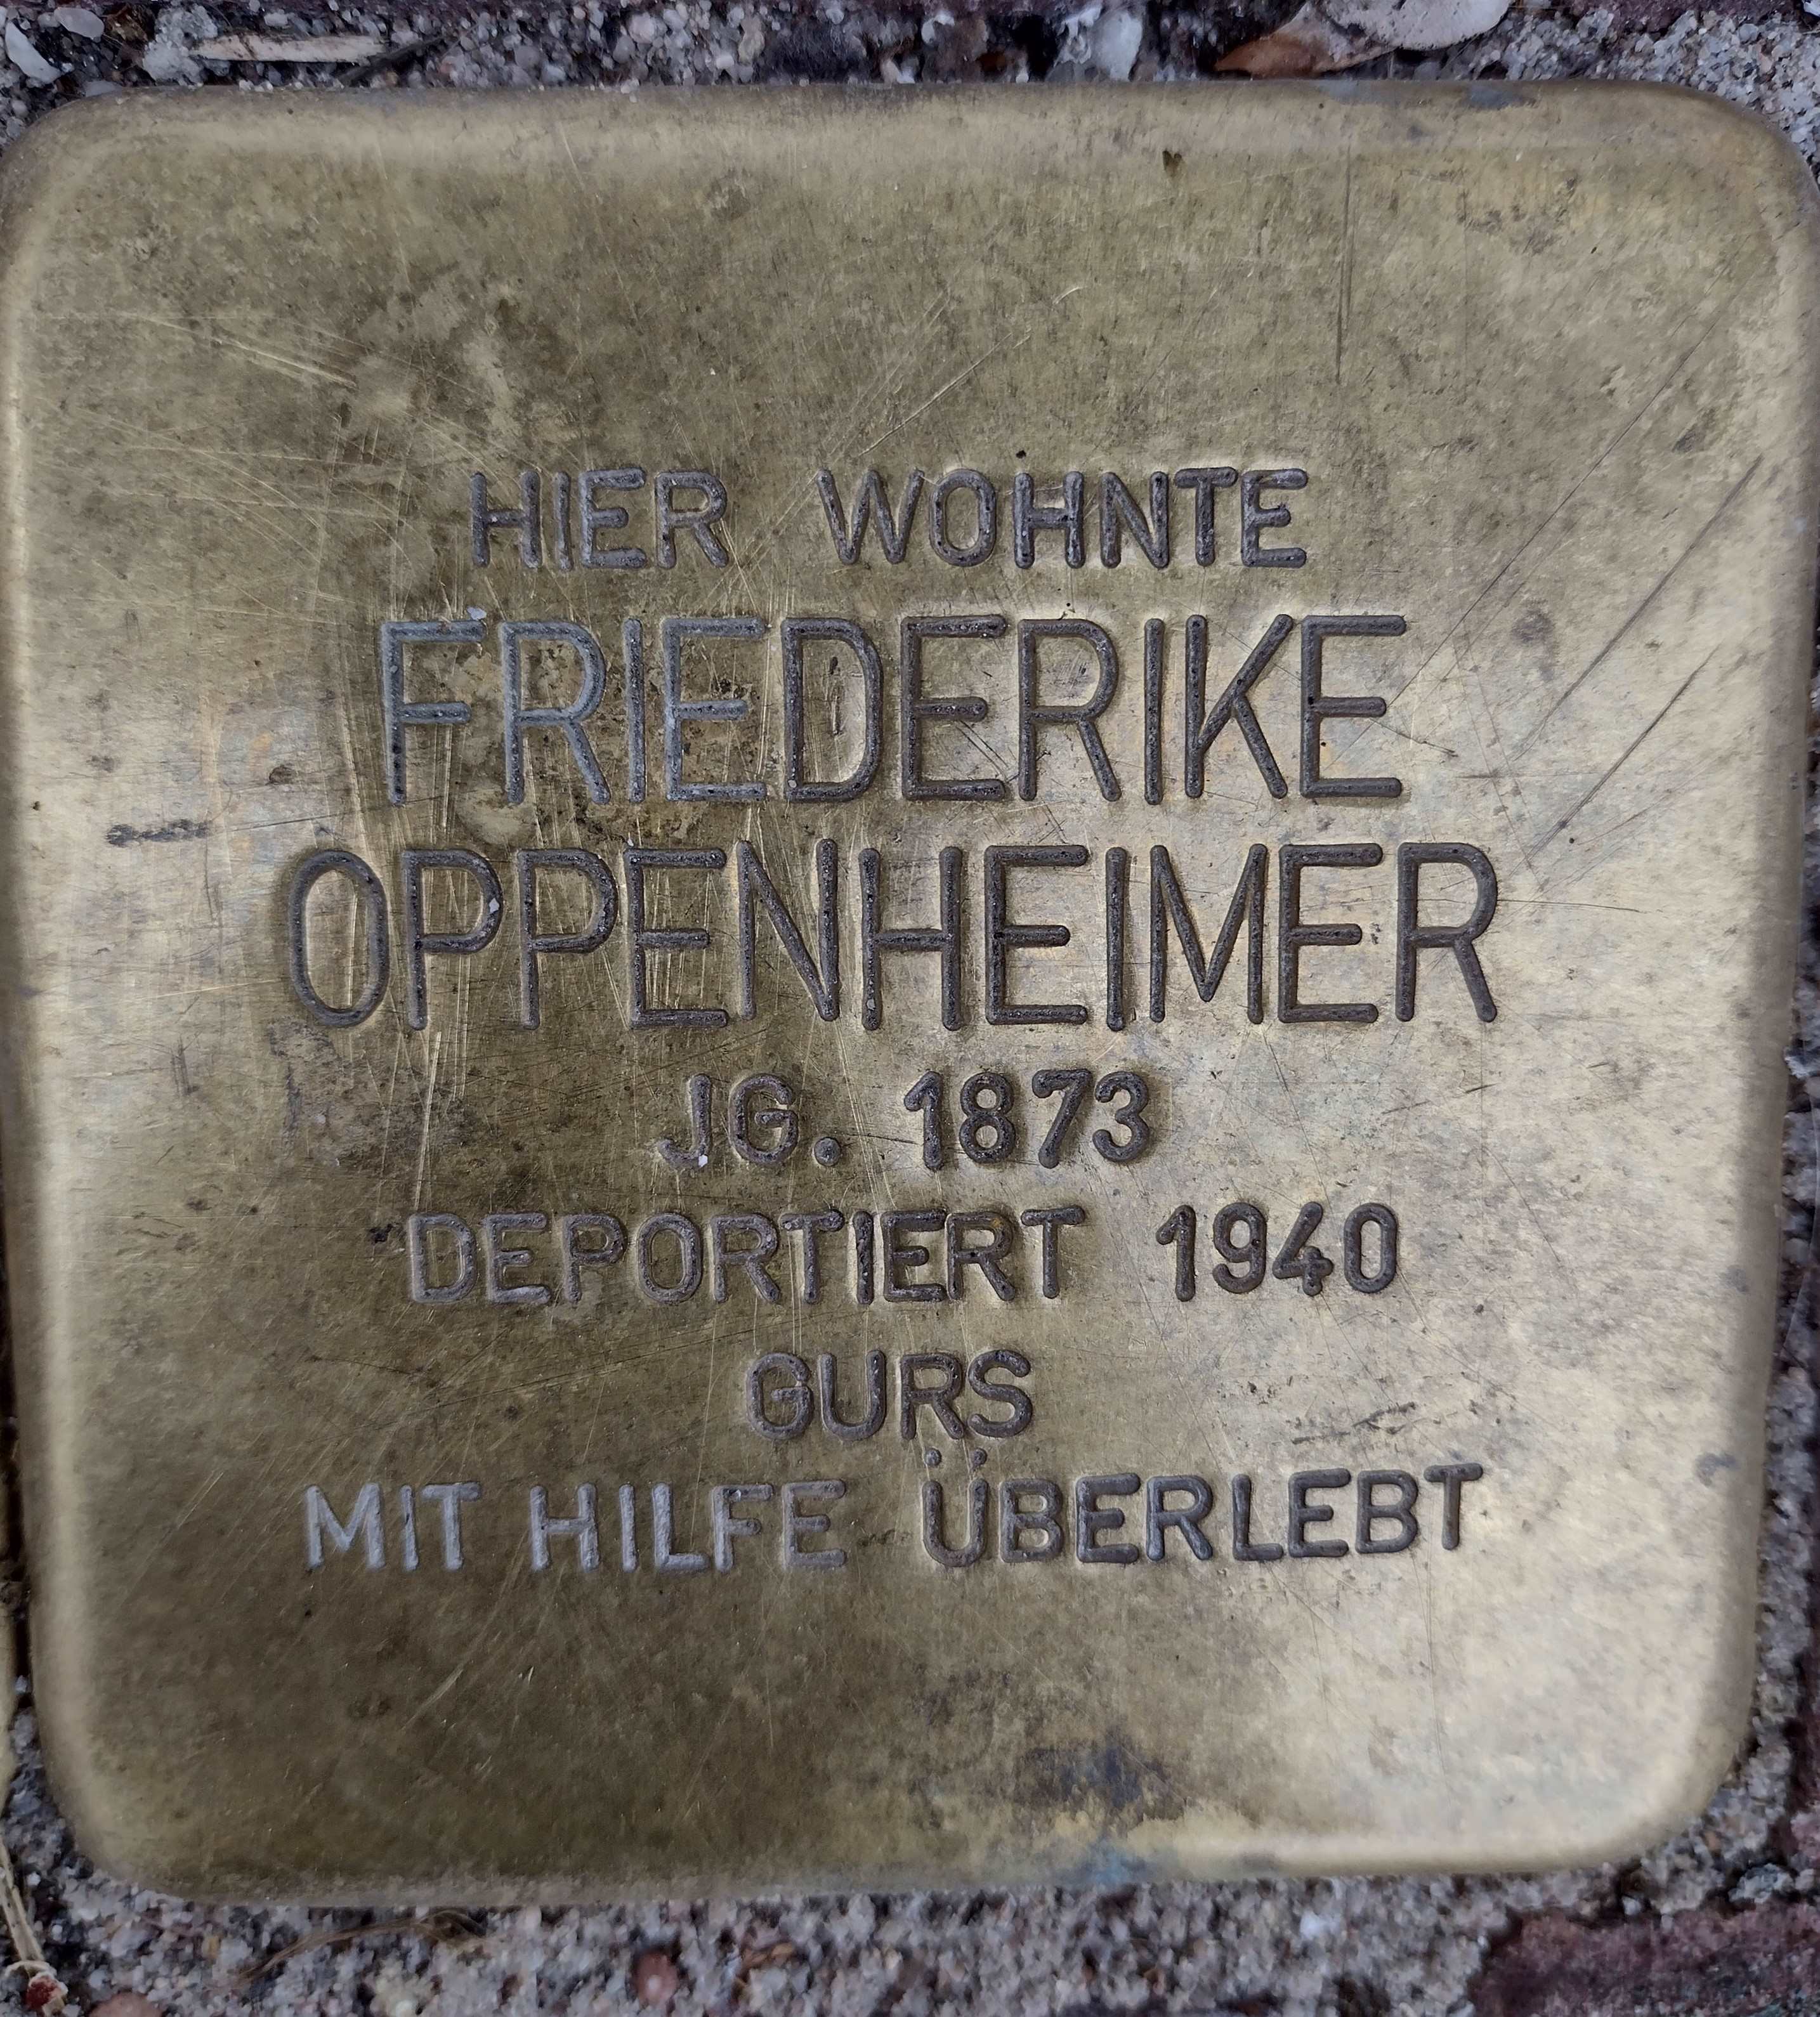 Stolperstein für Friederike Oppenheimer am Marktplatz 15, Foto: Matthias Pöhler